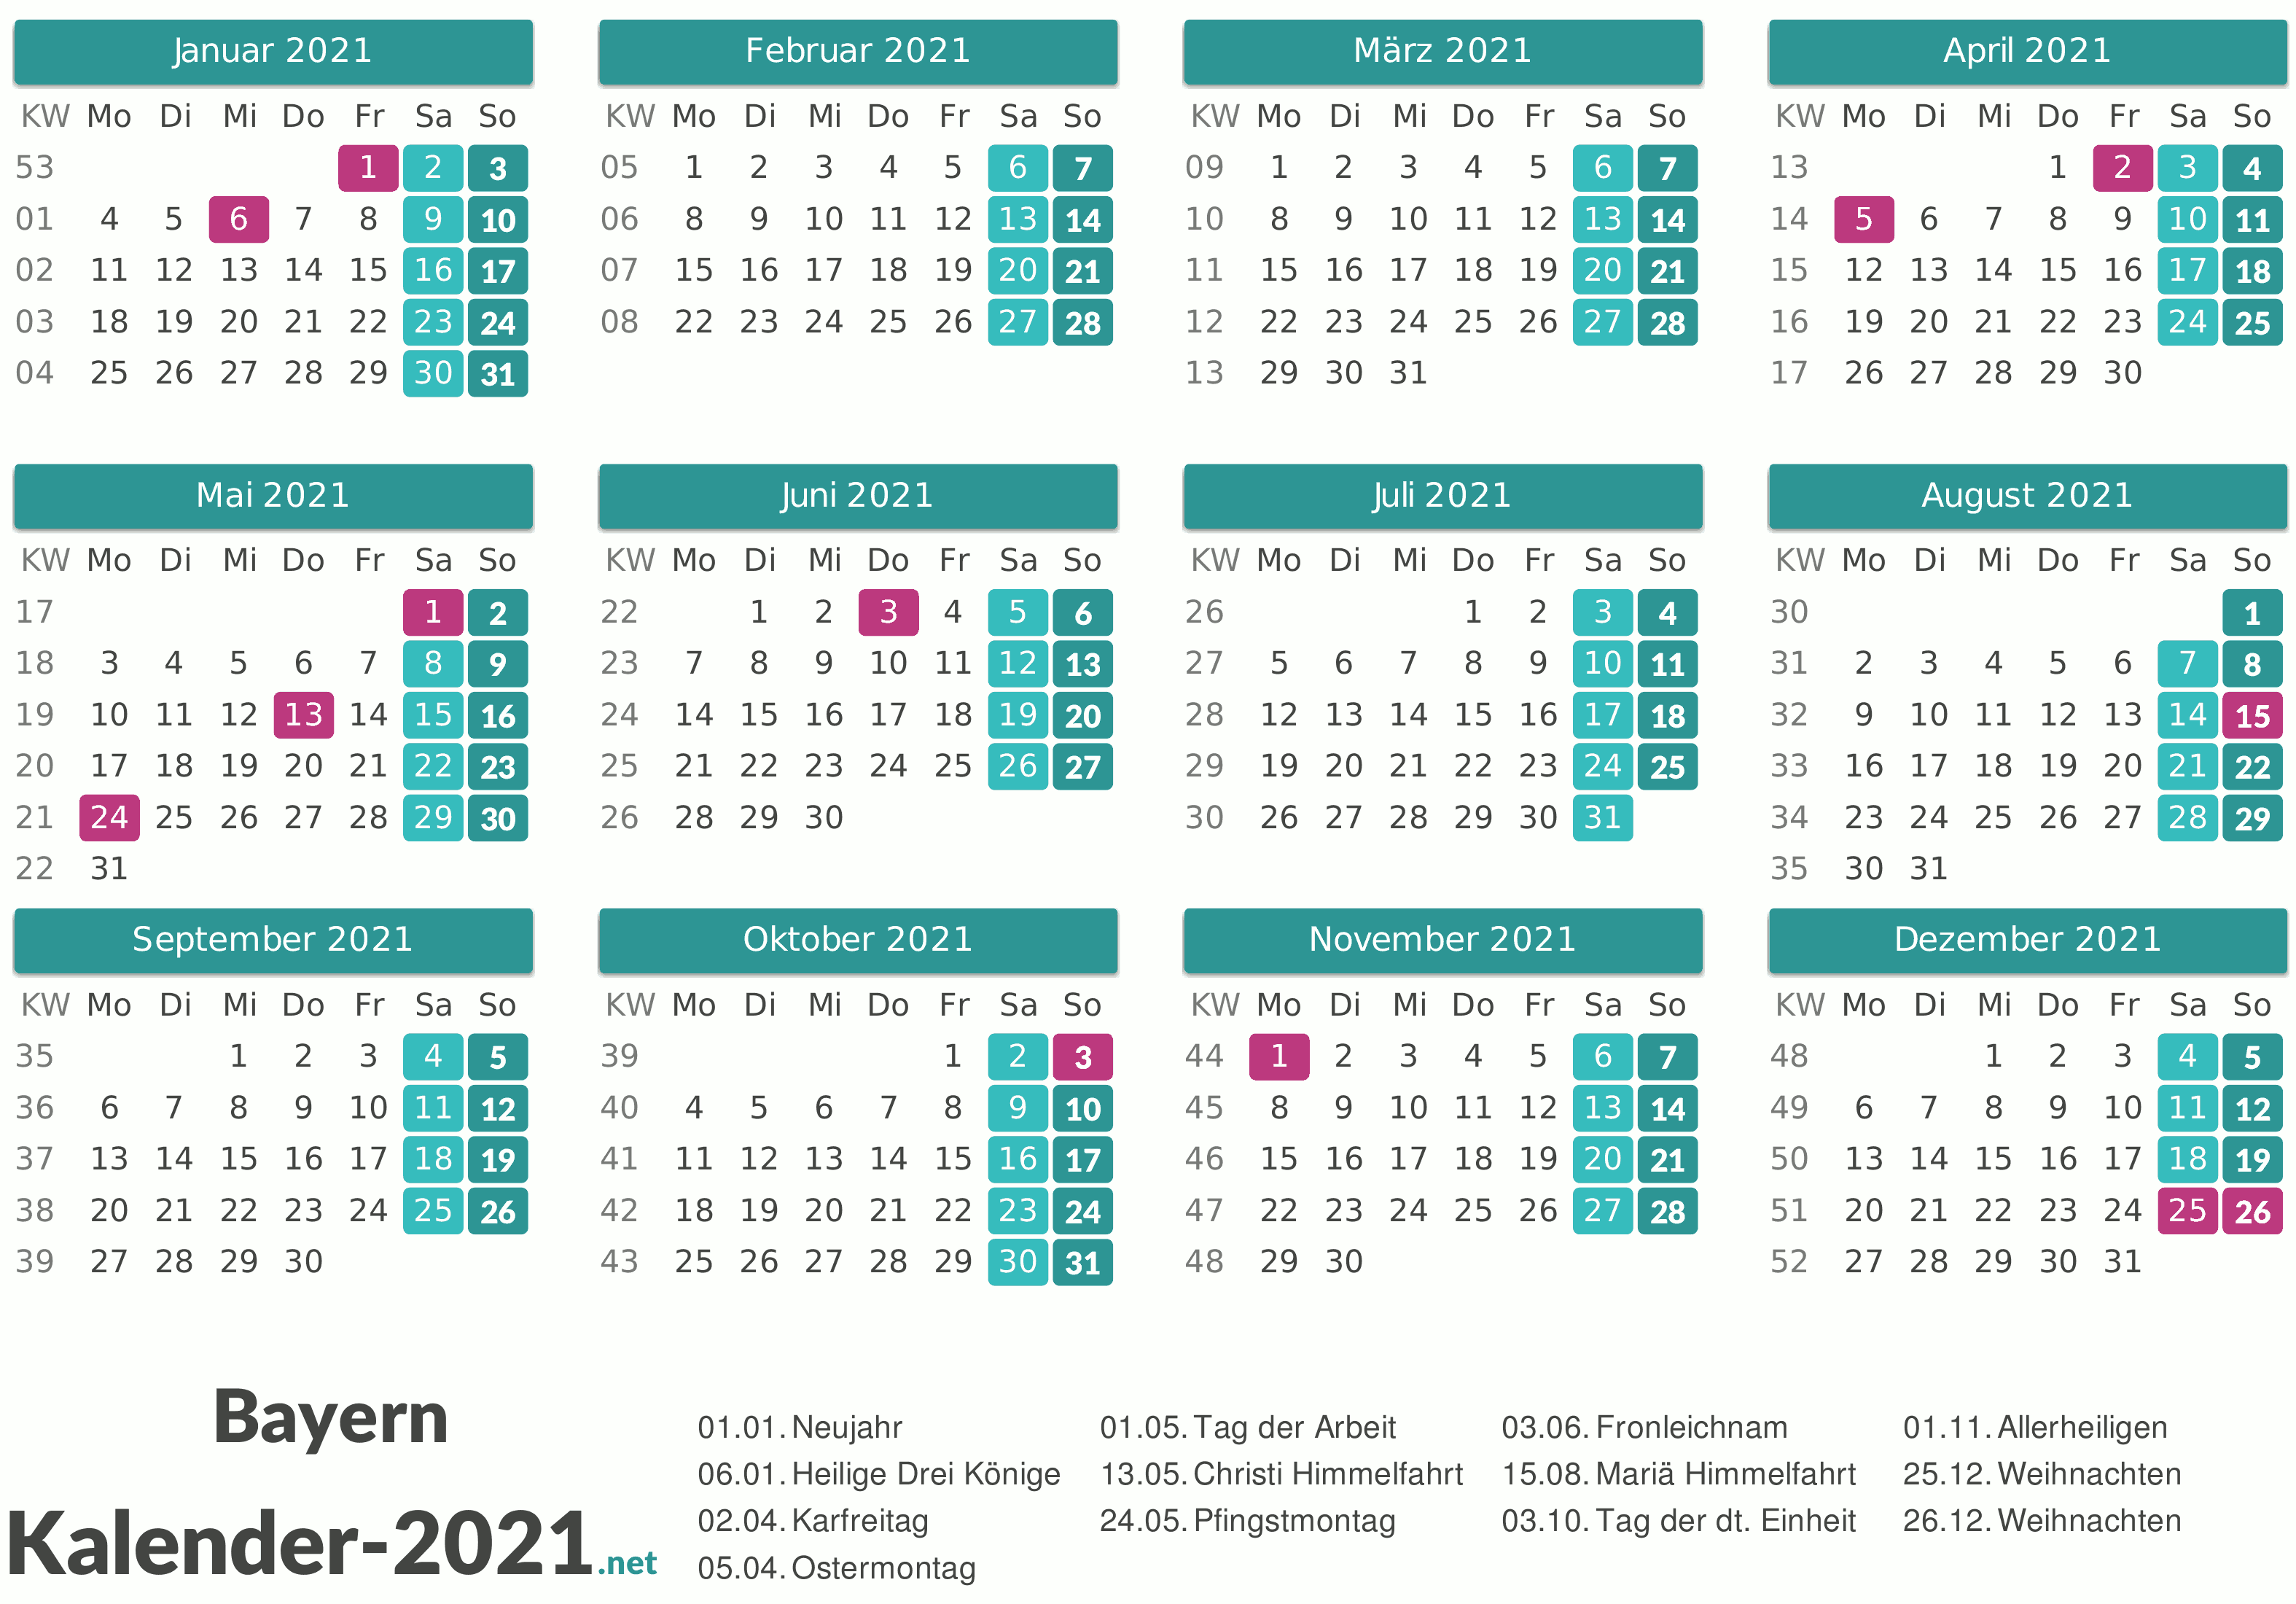 Kalender 2021 Bayern Selain kalender format jpg, kami juga menyajikan informasi lengkap untuk anda dalam bentuk kalender 2021 cdr / pdf. kalender 2021 bayern